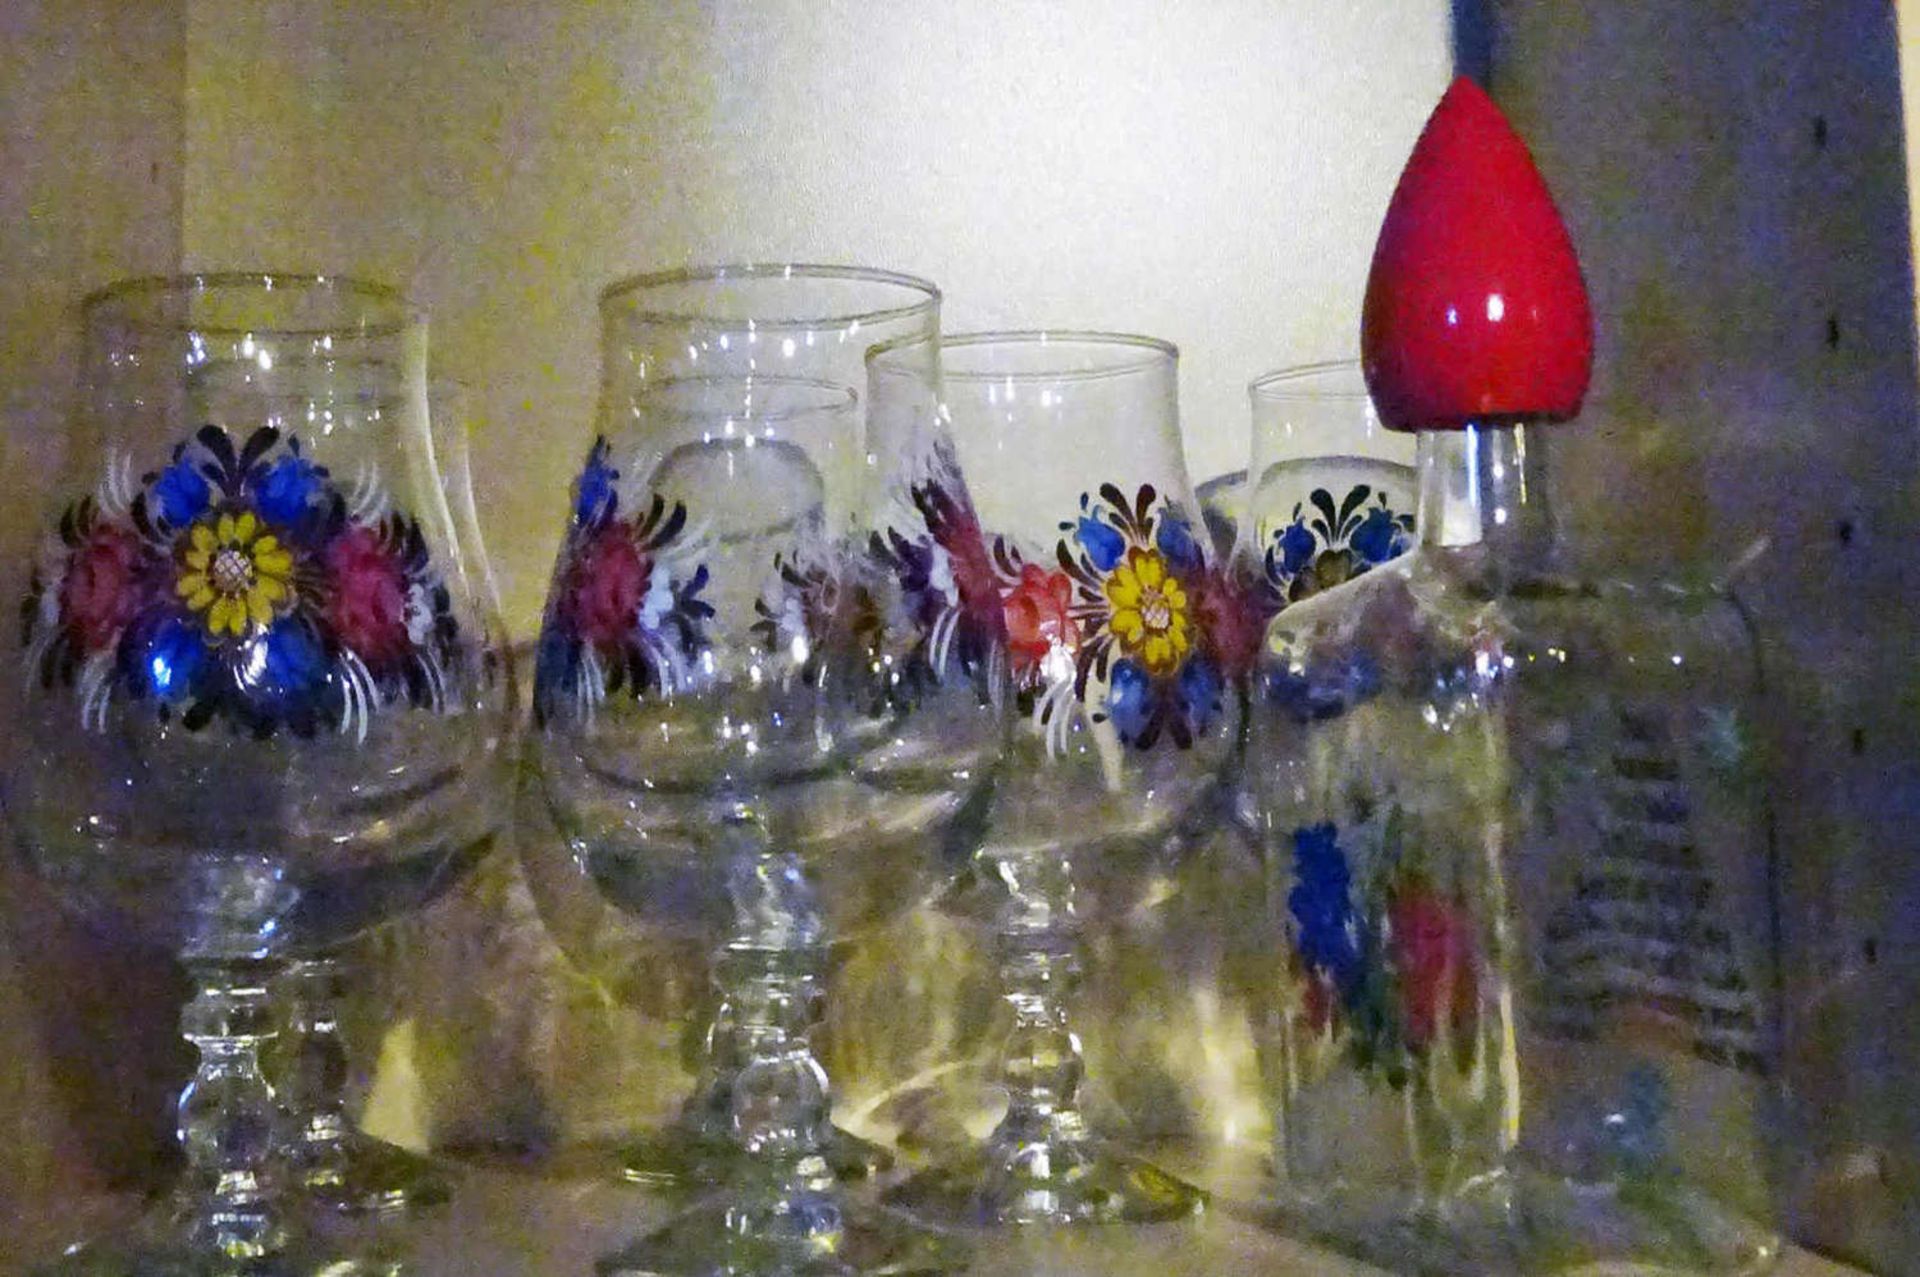 6 Biergläser mit Blumenmalerei, 1 Glas mit Gravur "Ingrid", sowie 1 Schnapsflasche, ebenfalls mit